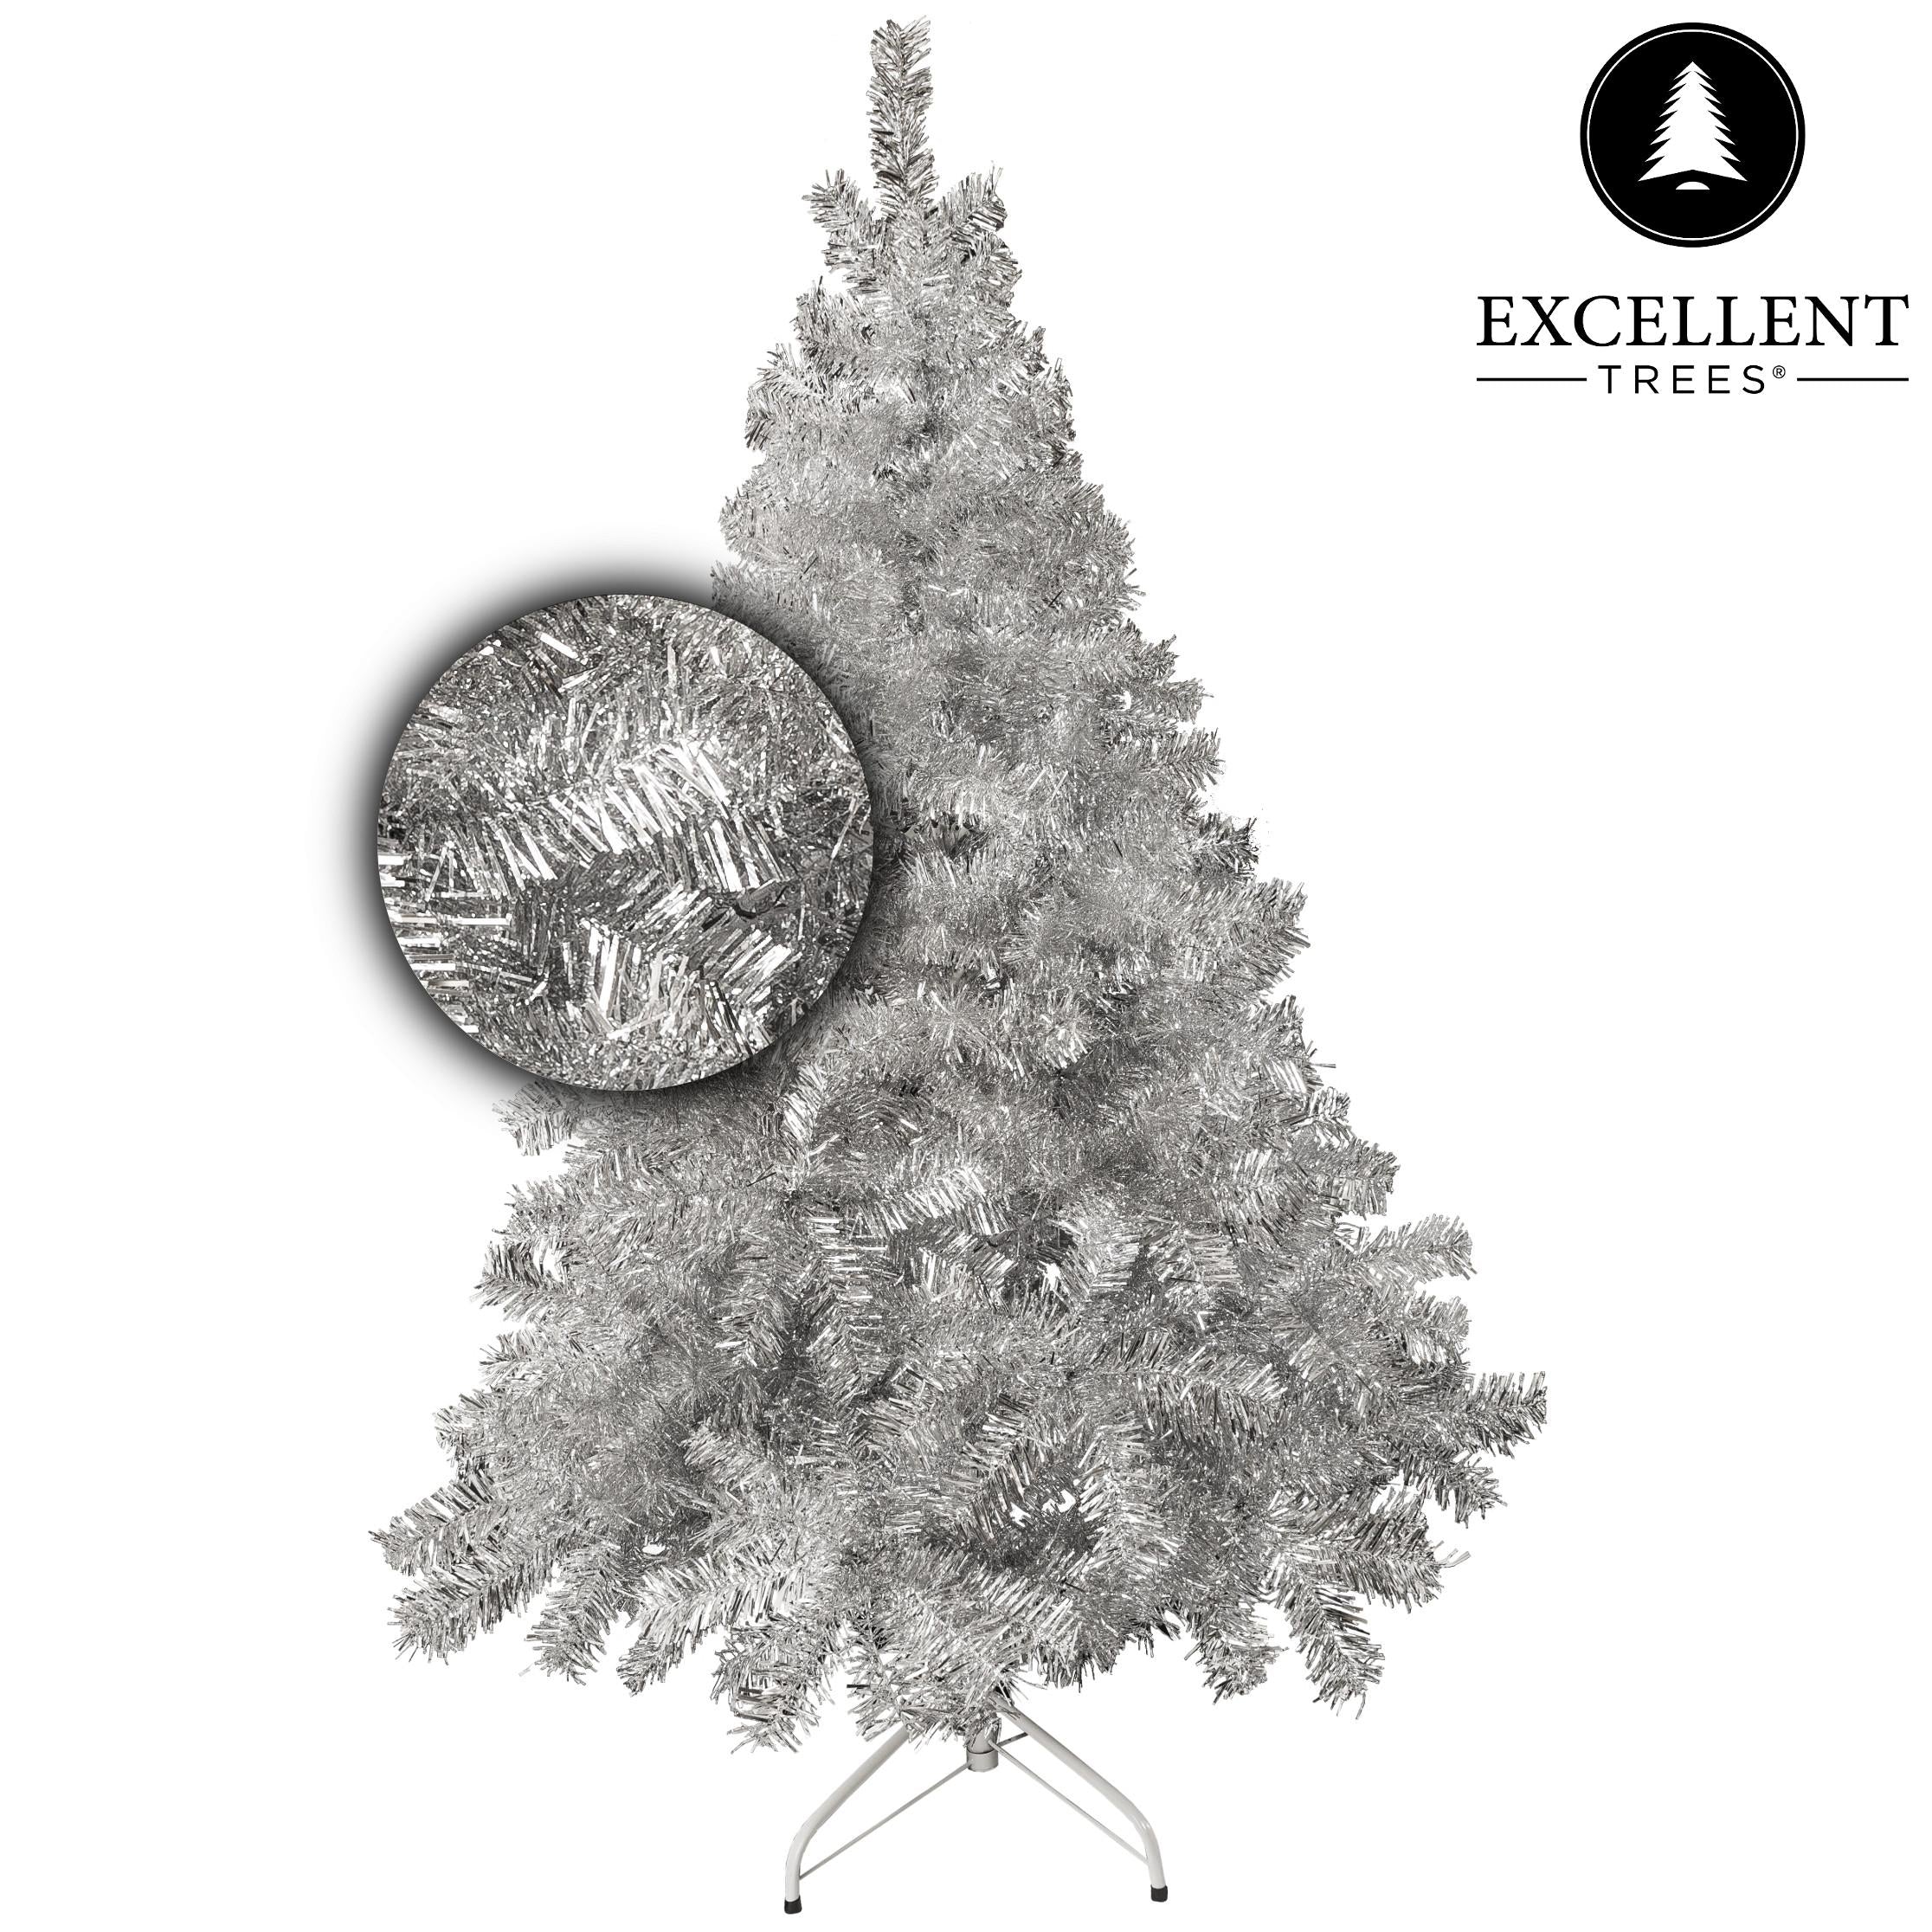 Weihnachtsbaum Excellent Trees® Stavanger Silver 210 cm - Luxusausführung